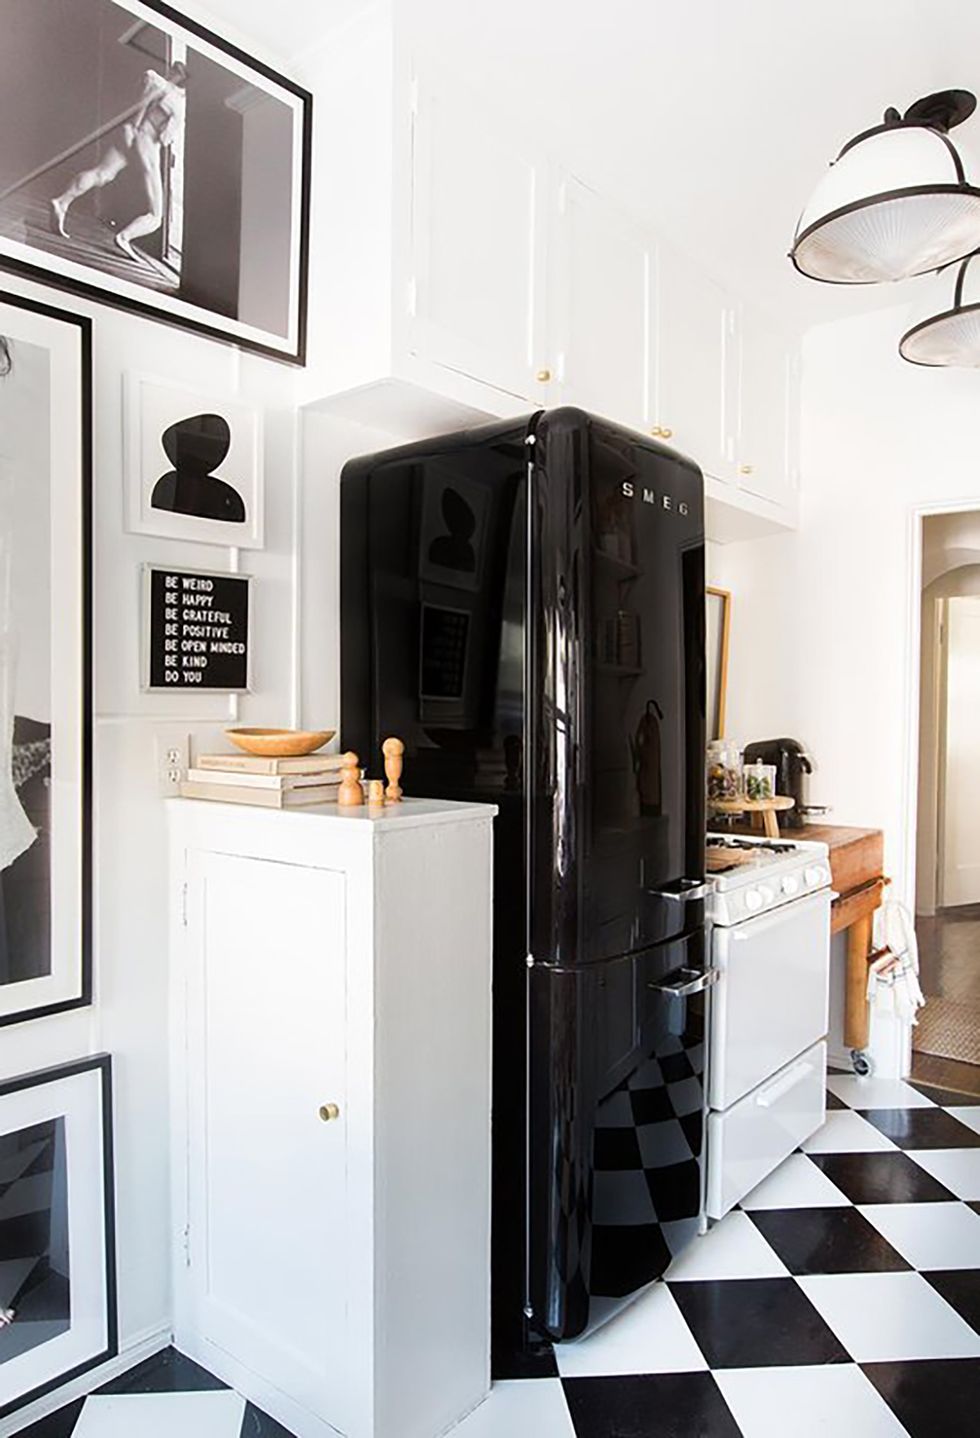 Interior de cocina moderna con nevera. nevera negra retro.